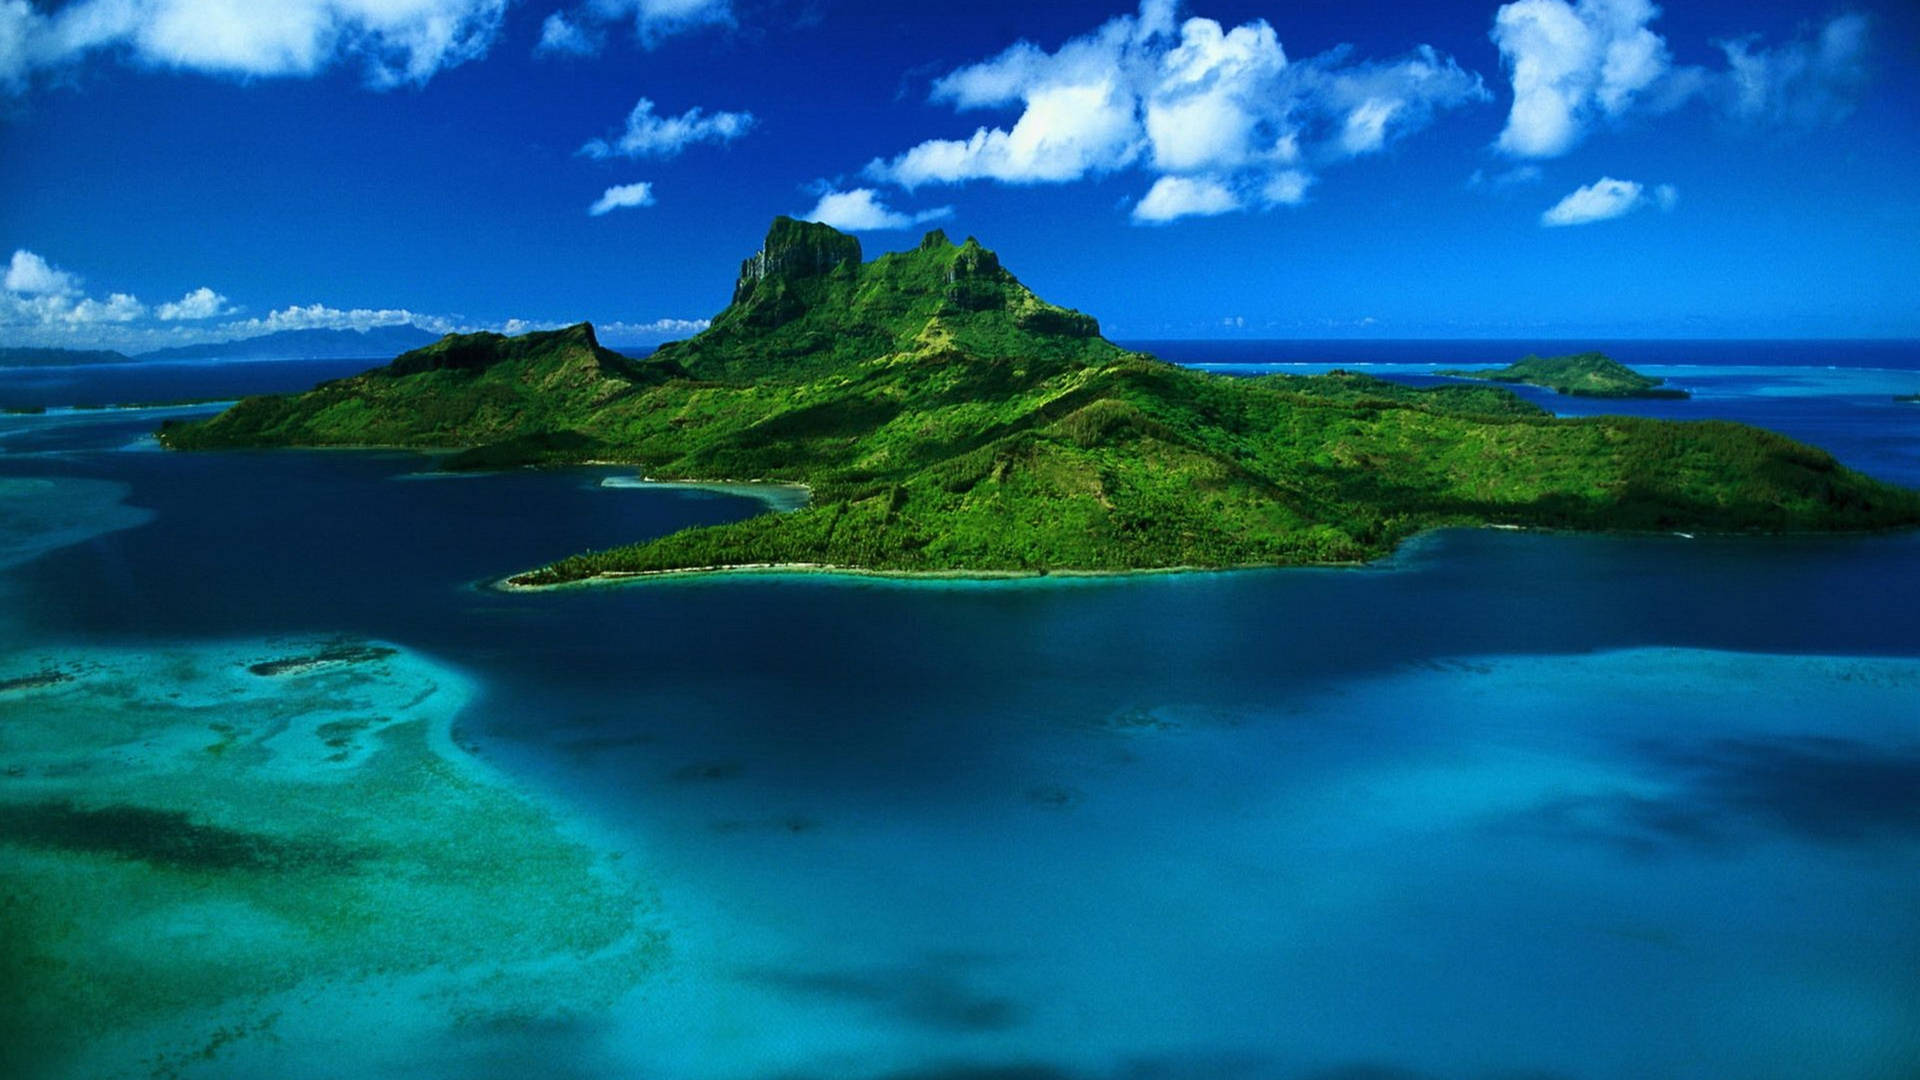 Mauritius Island Ocean View